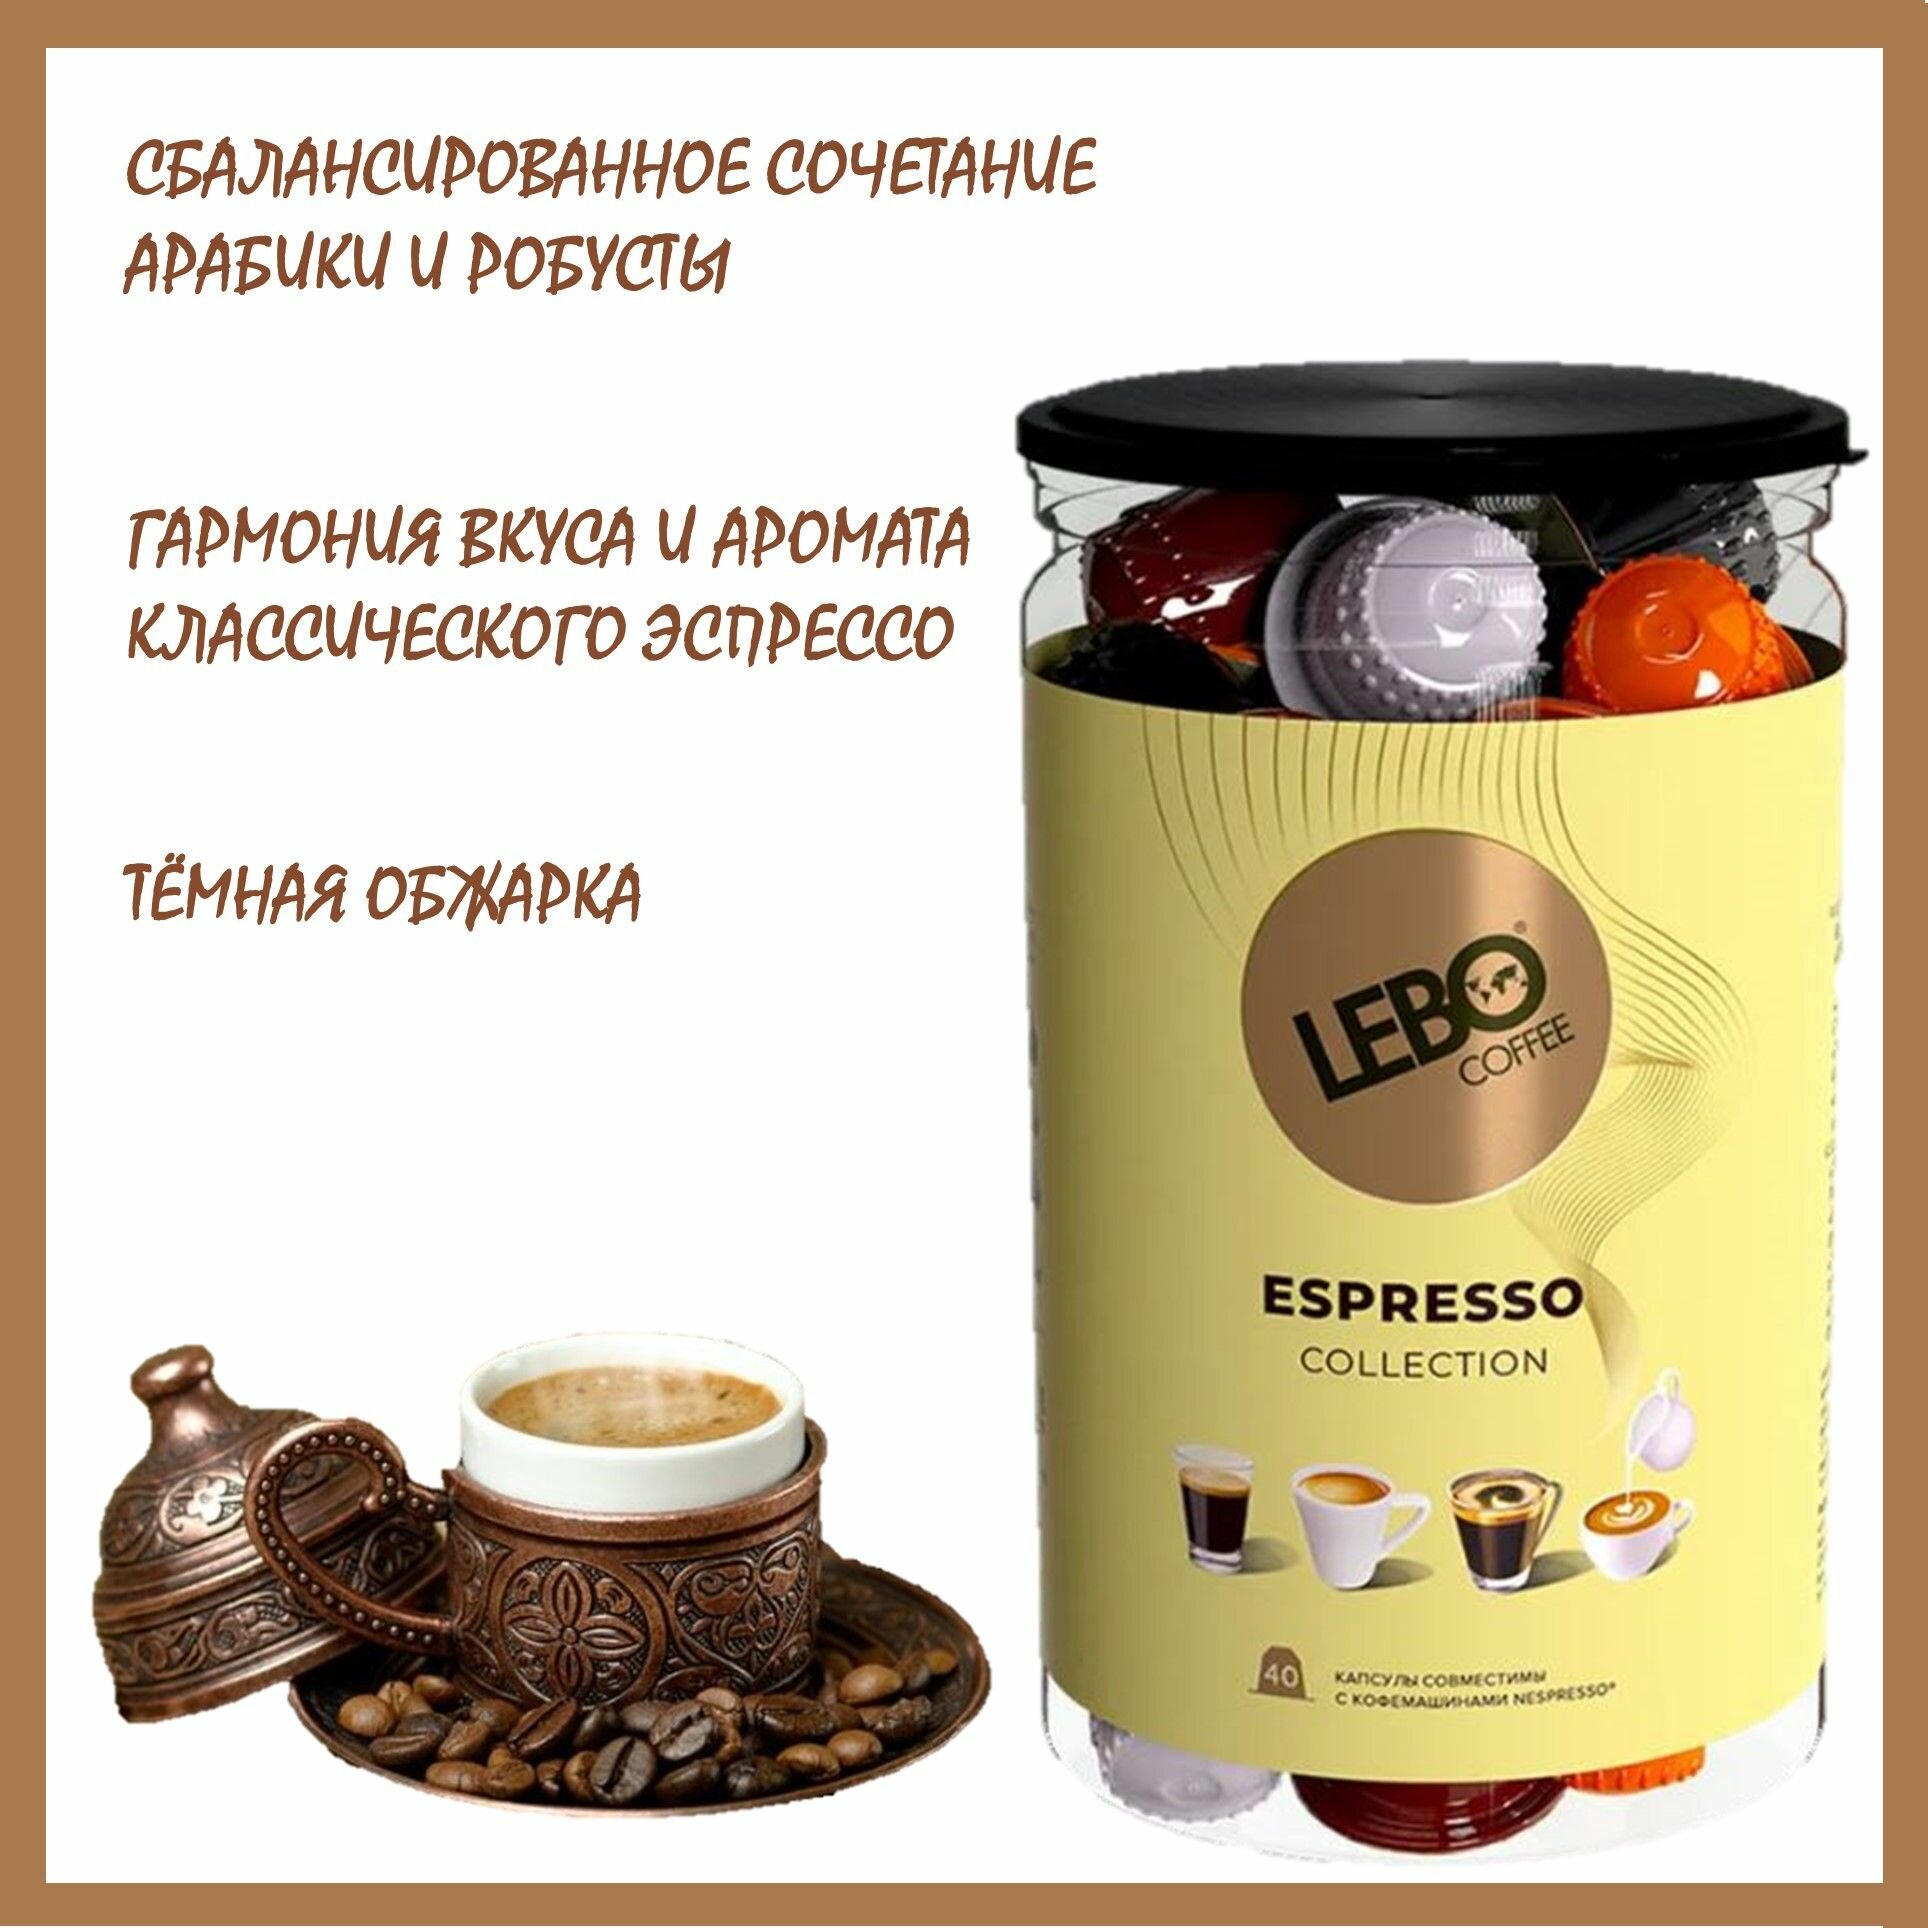 Кофе в капсулах Лебо Эспрессо Коллекшн (Lebo Espresso Collection) для кофемашин Nespresso 40 капсул * 5,5 г/ Россия - фотография № 3